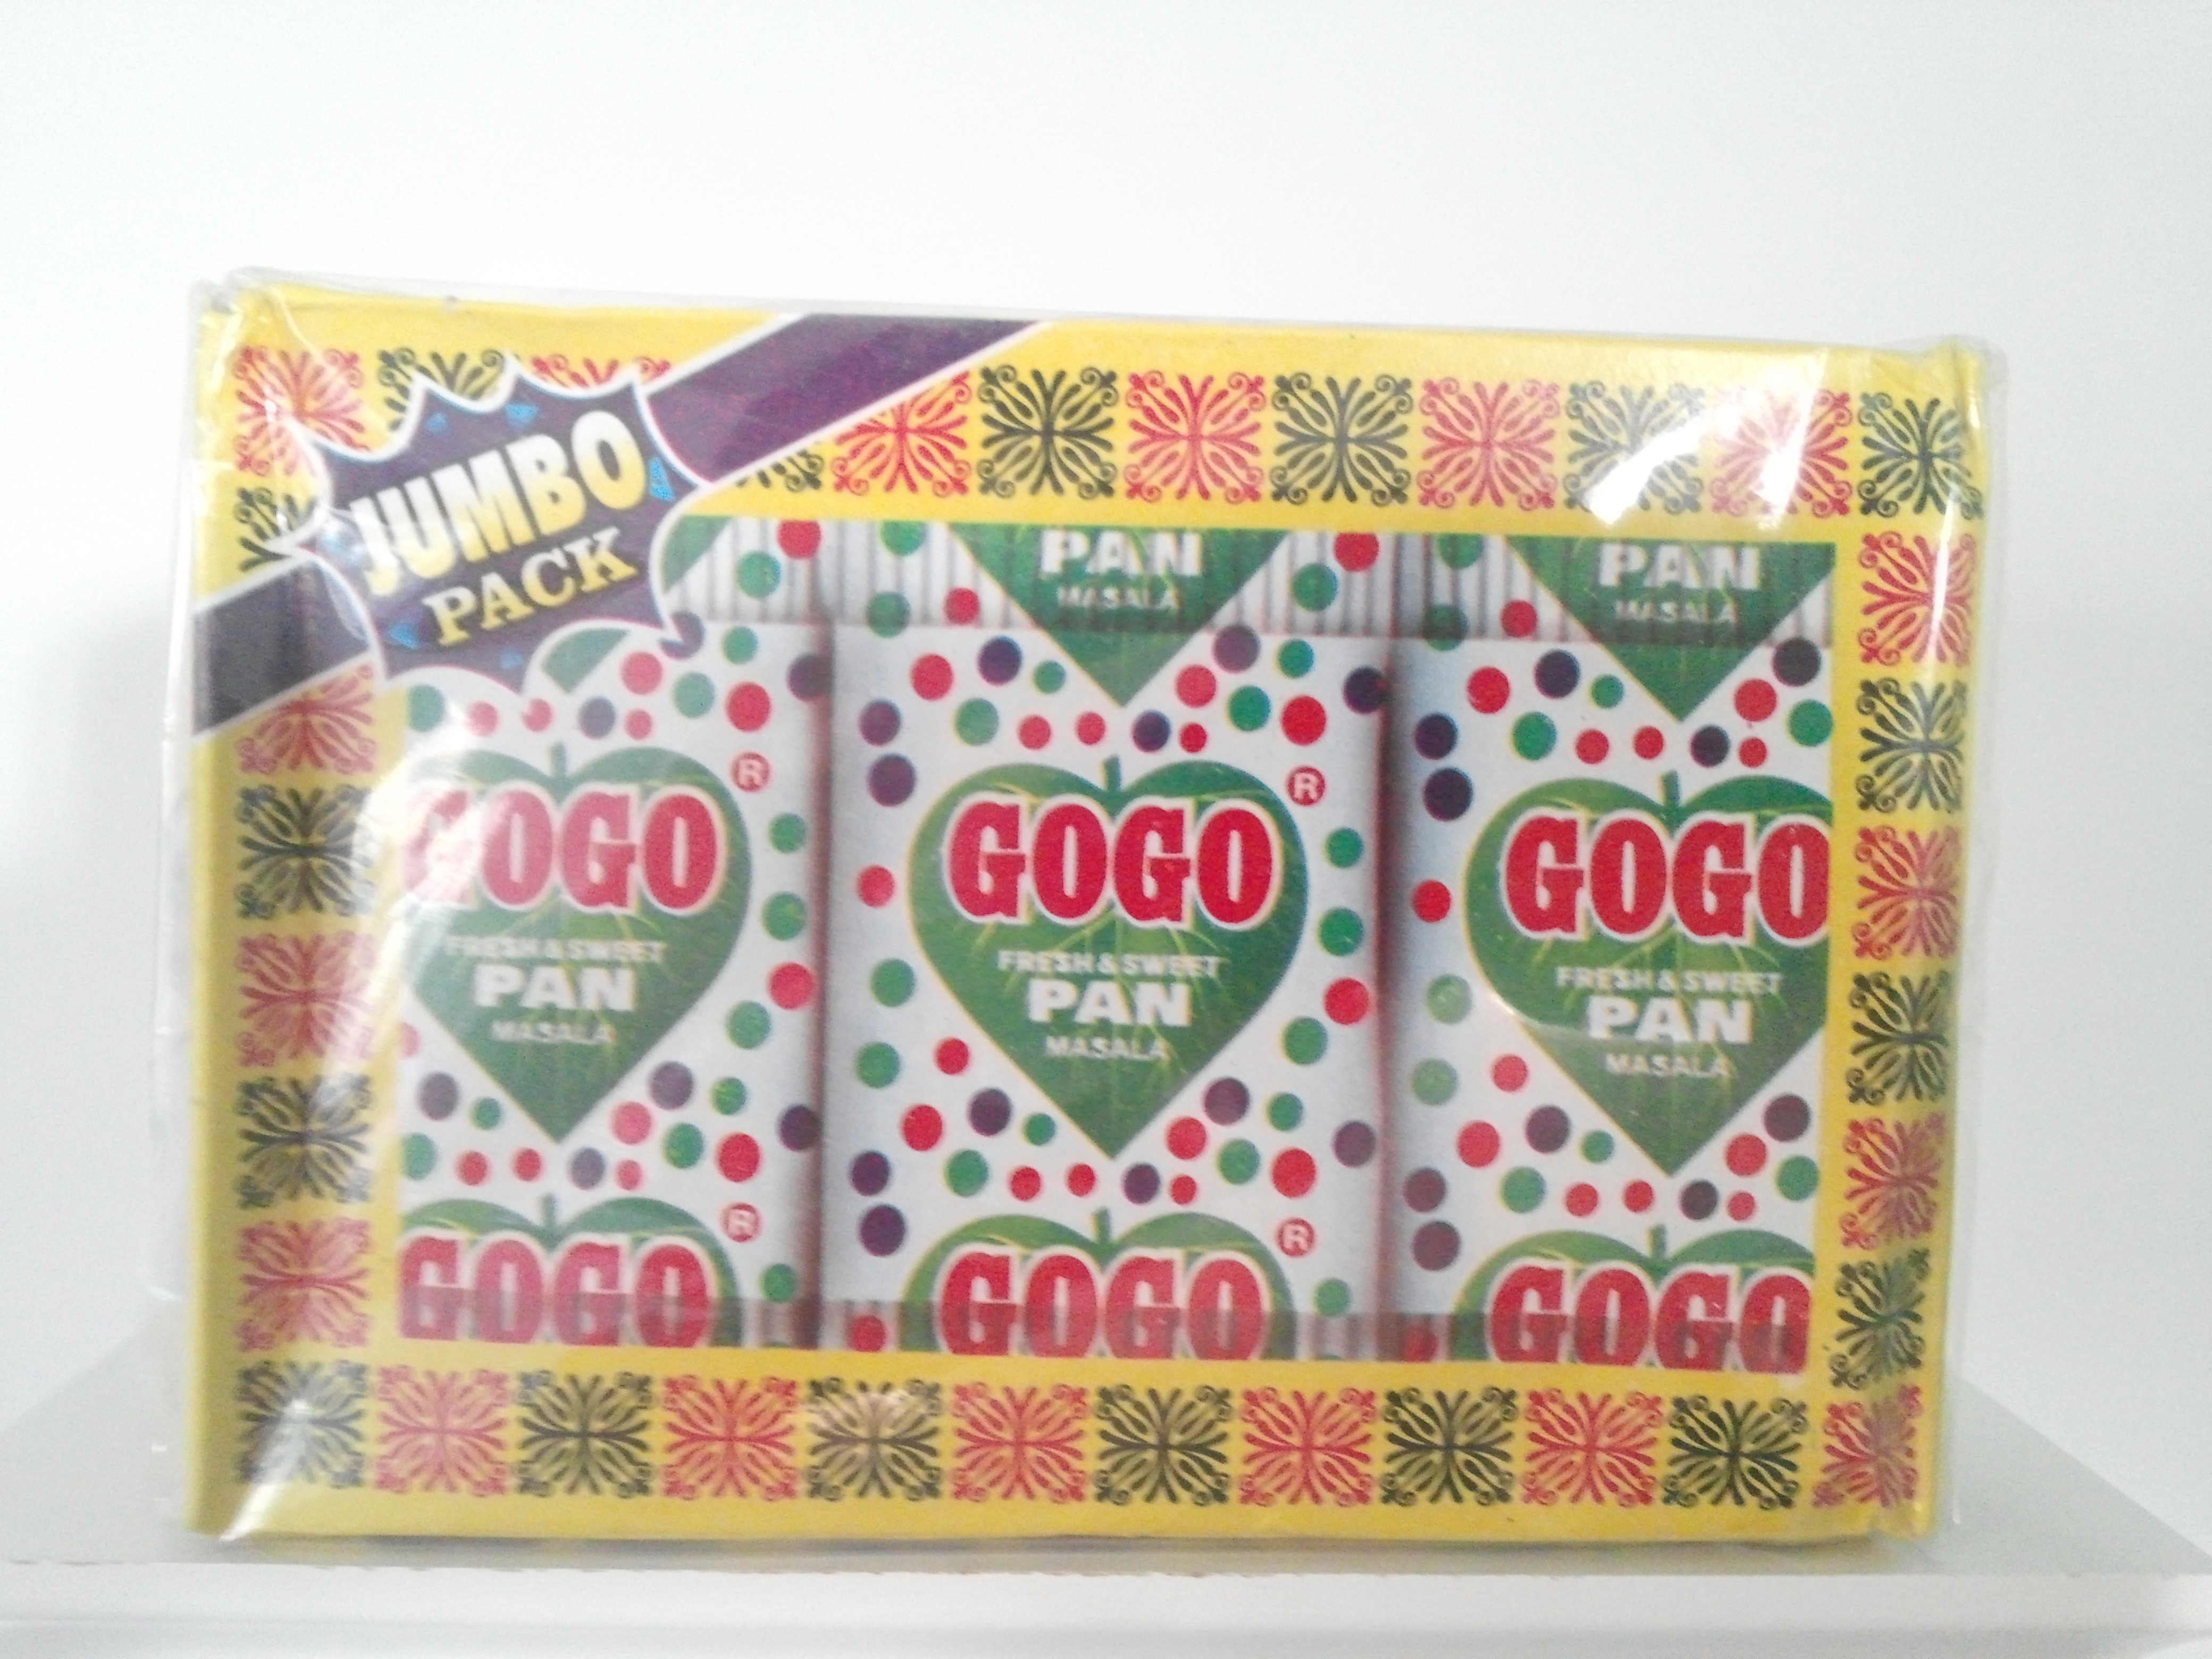 GOGO Sweet Pan Masala 360 grm 48 Packs